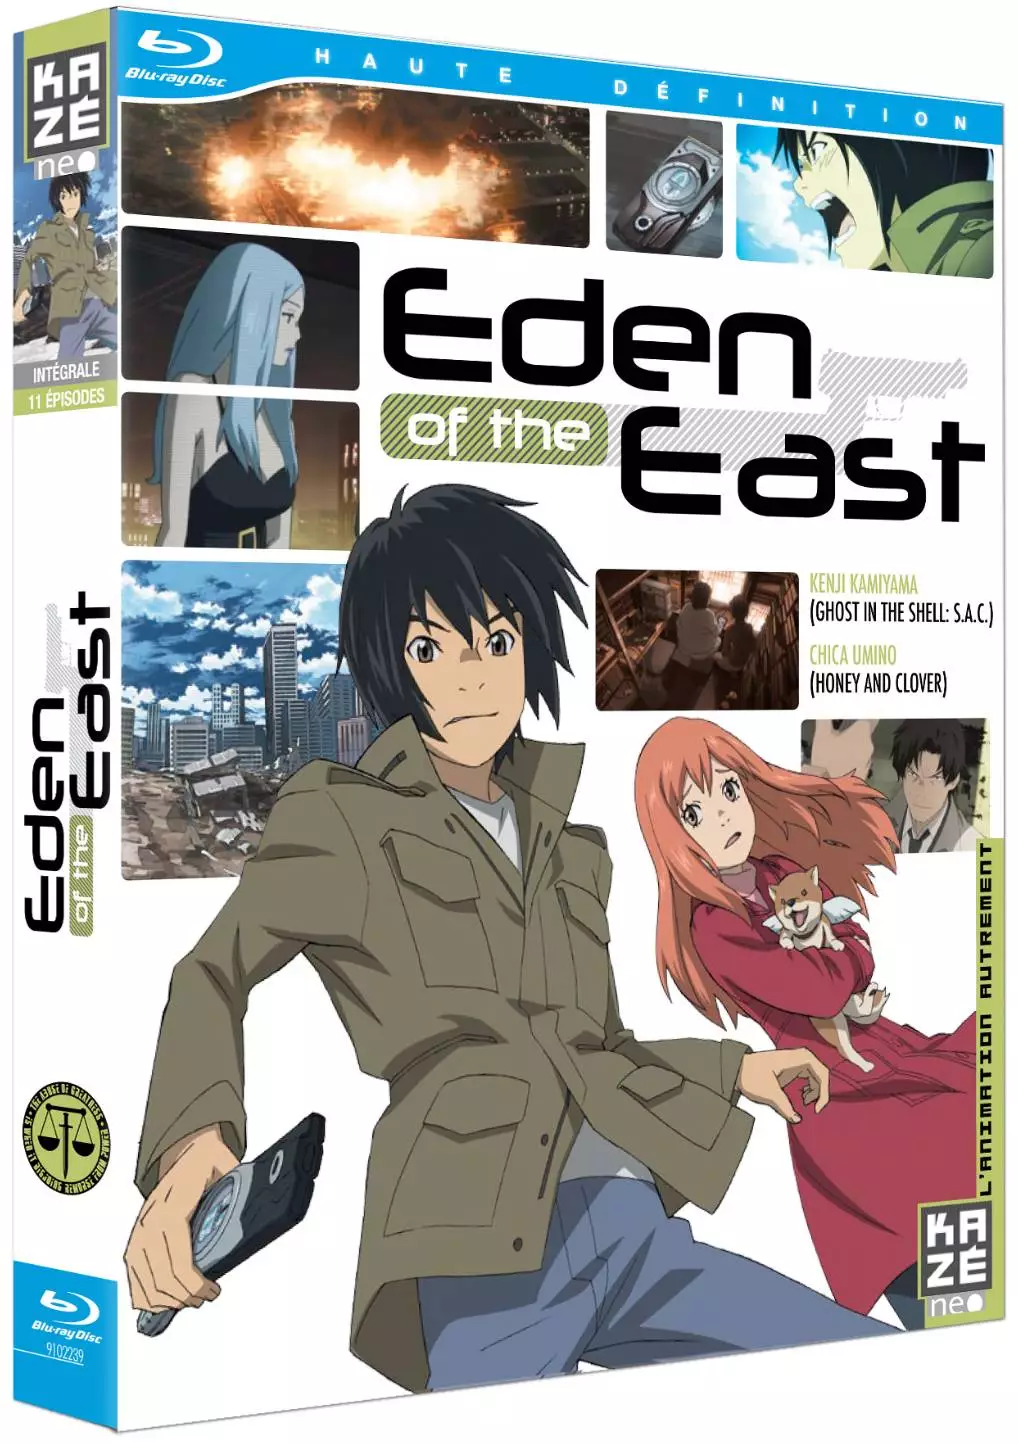 http://www.manga-news.com/public/images/dvd_volumes/eden-ofthe-east-br.jpg